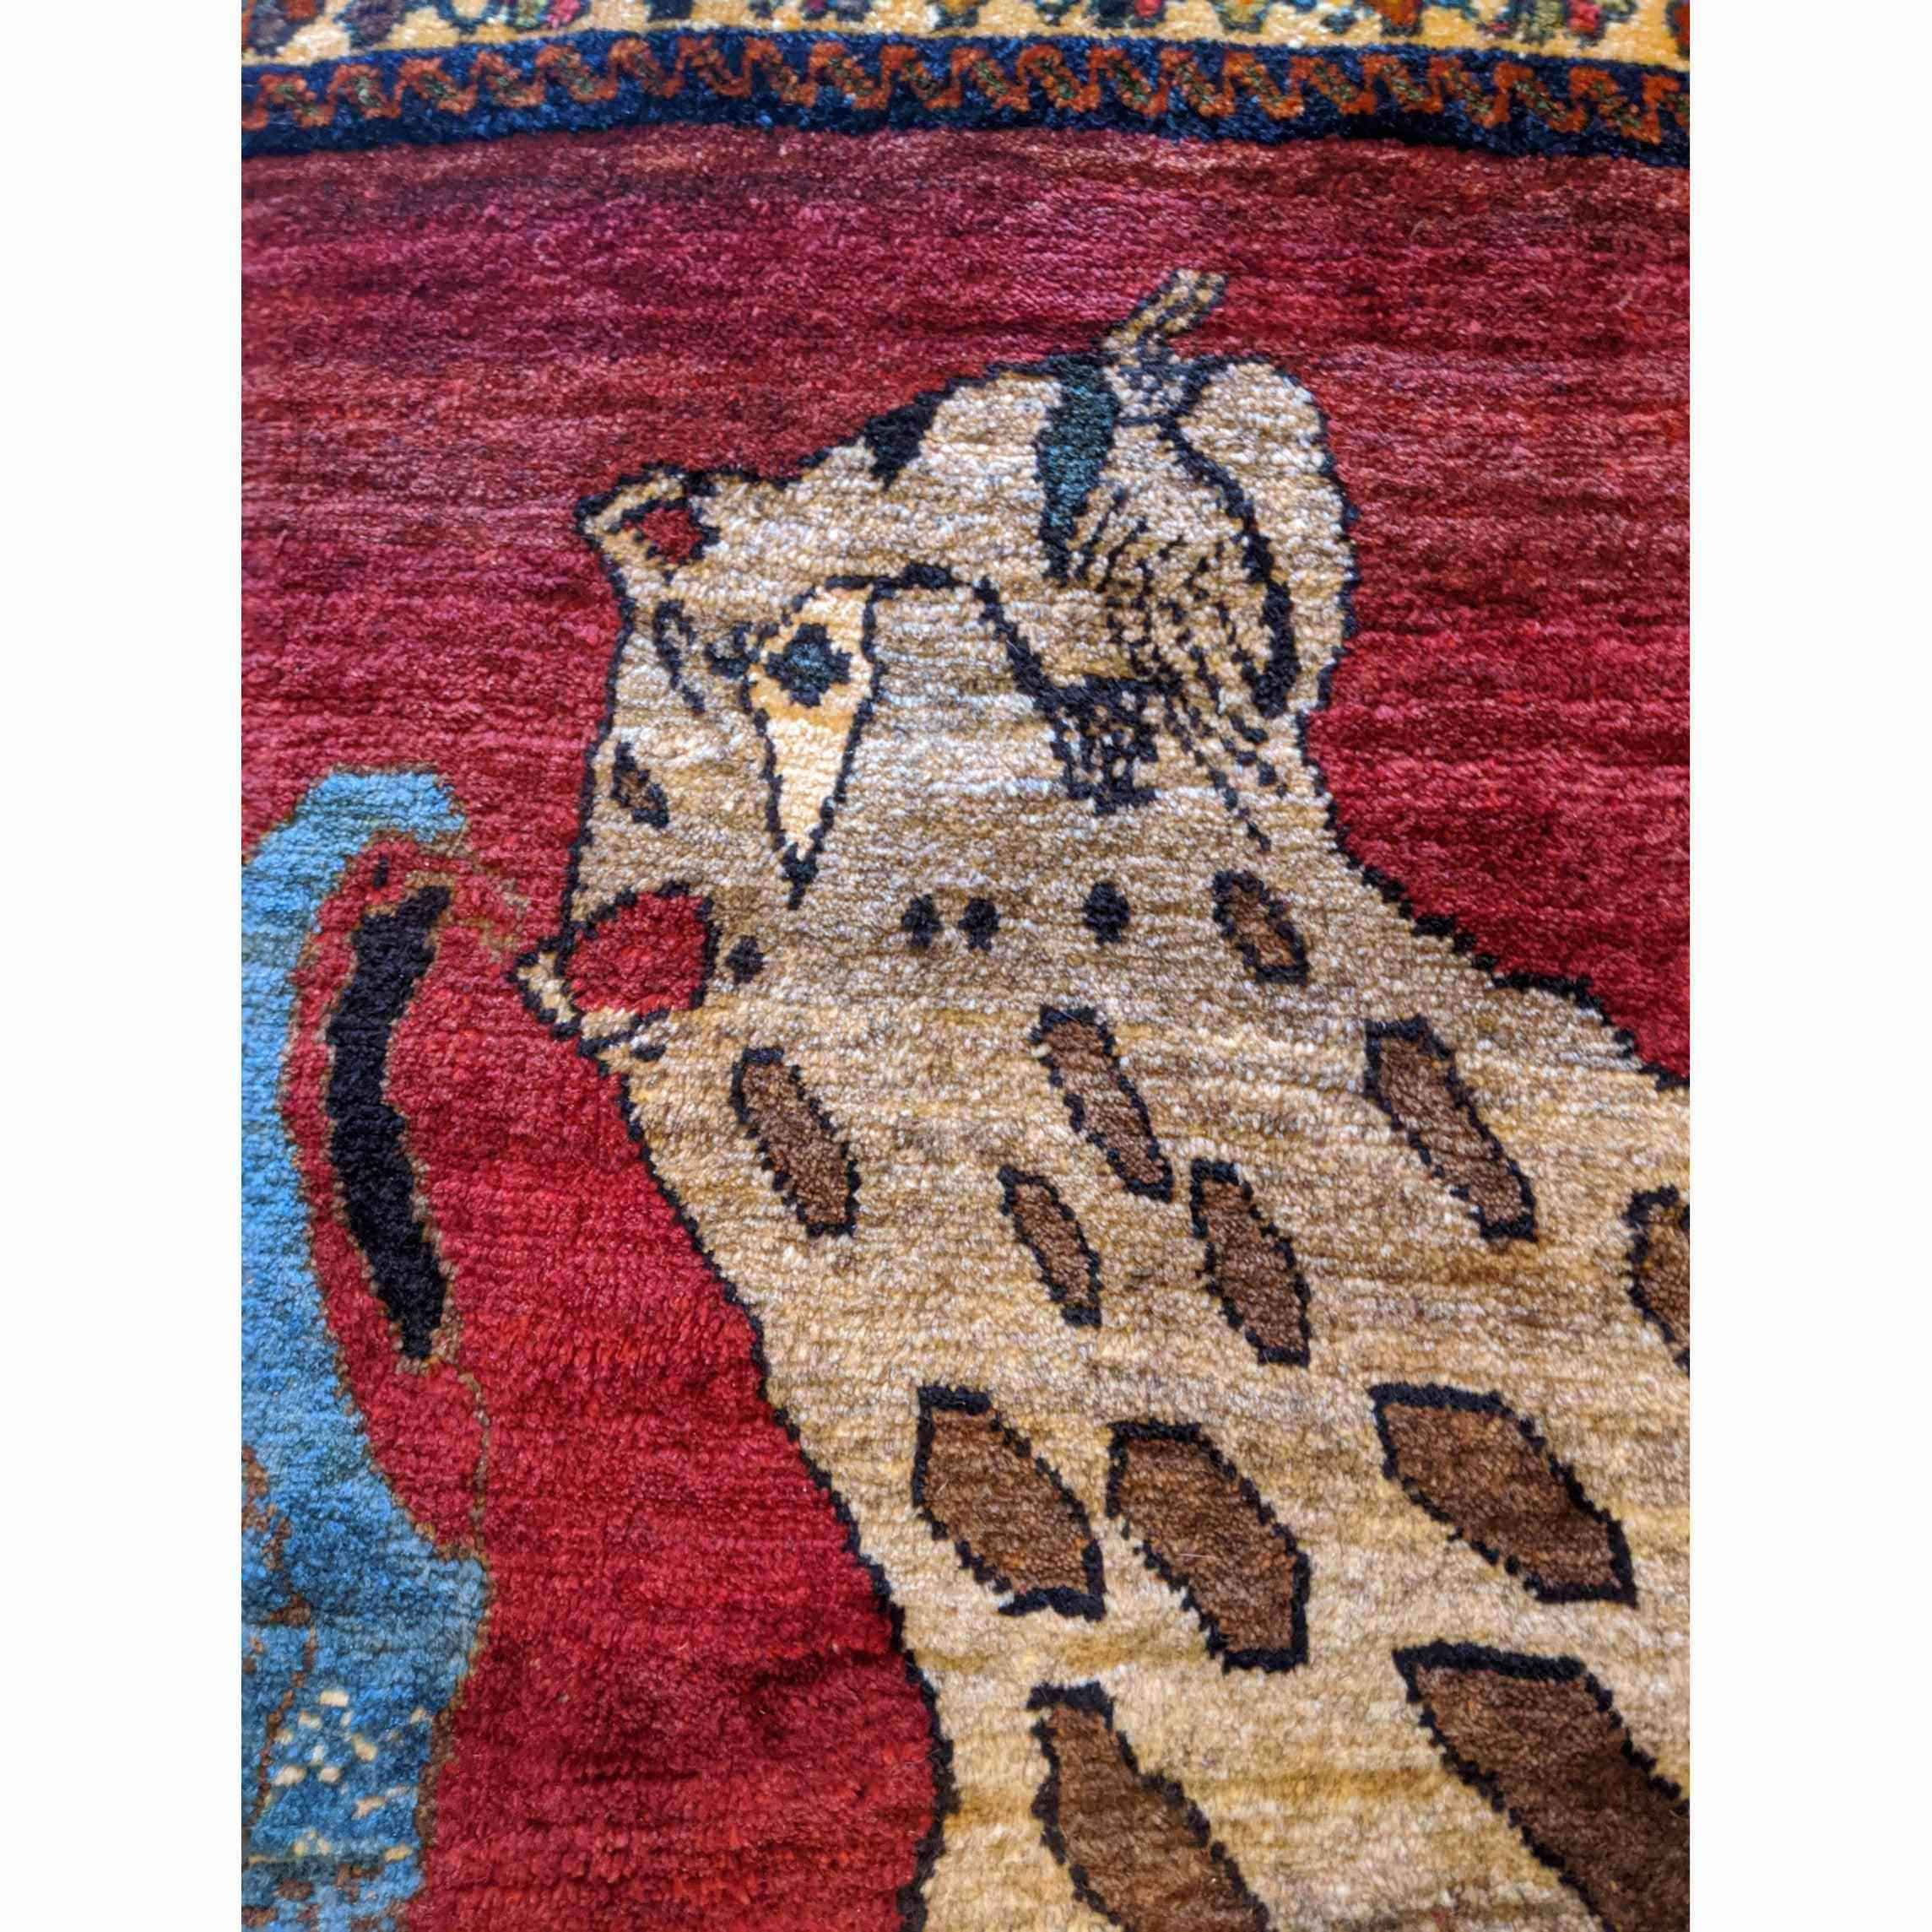 162 x 130 cm Animal Design Qashqai Tribal Red Rug - Rugmaster